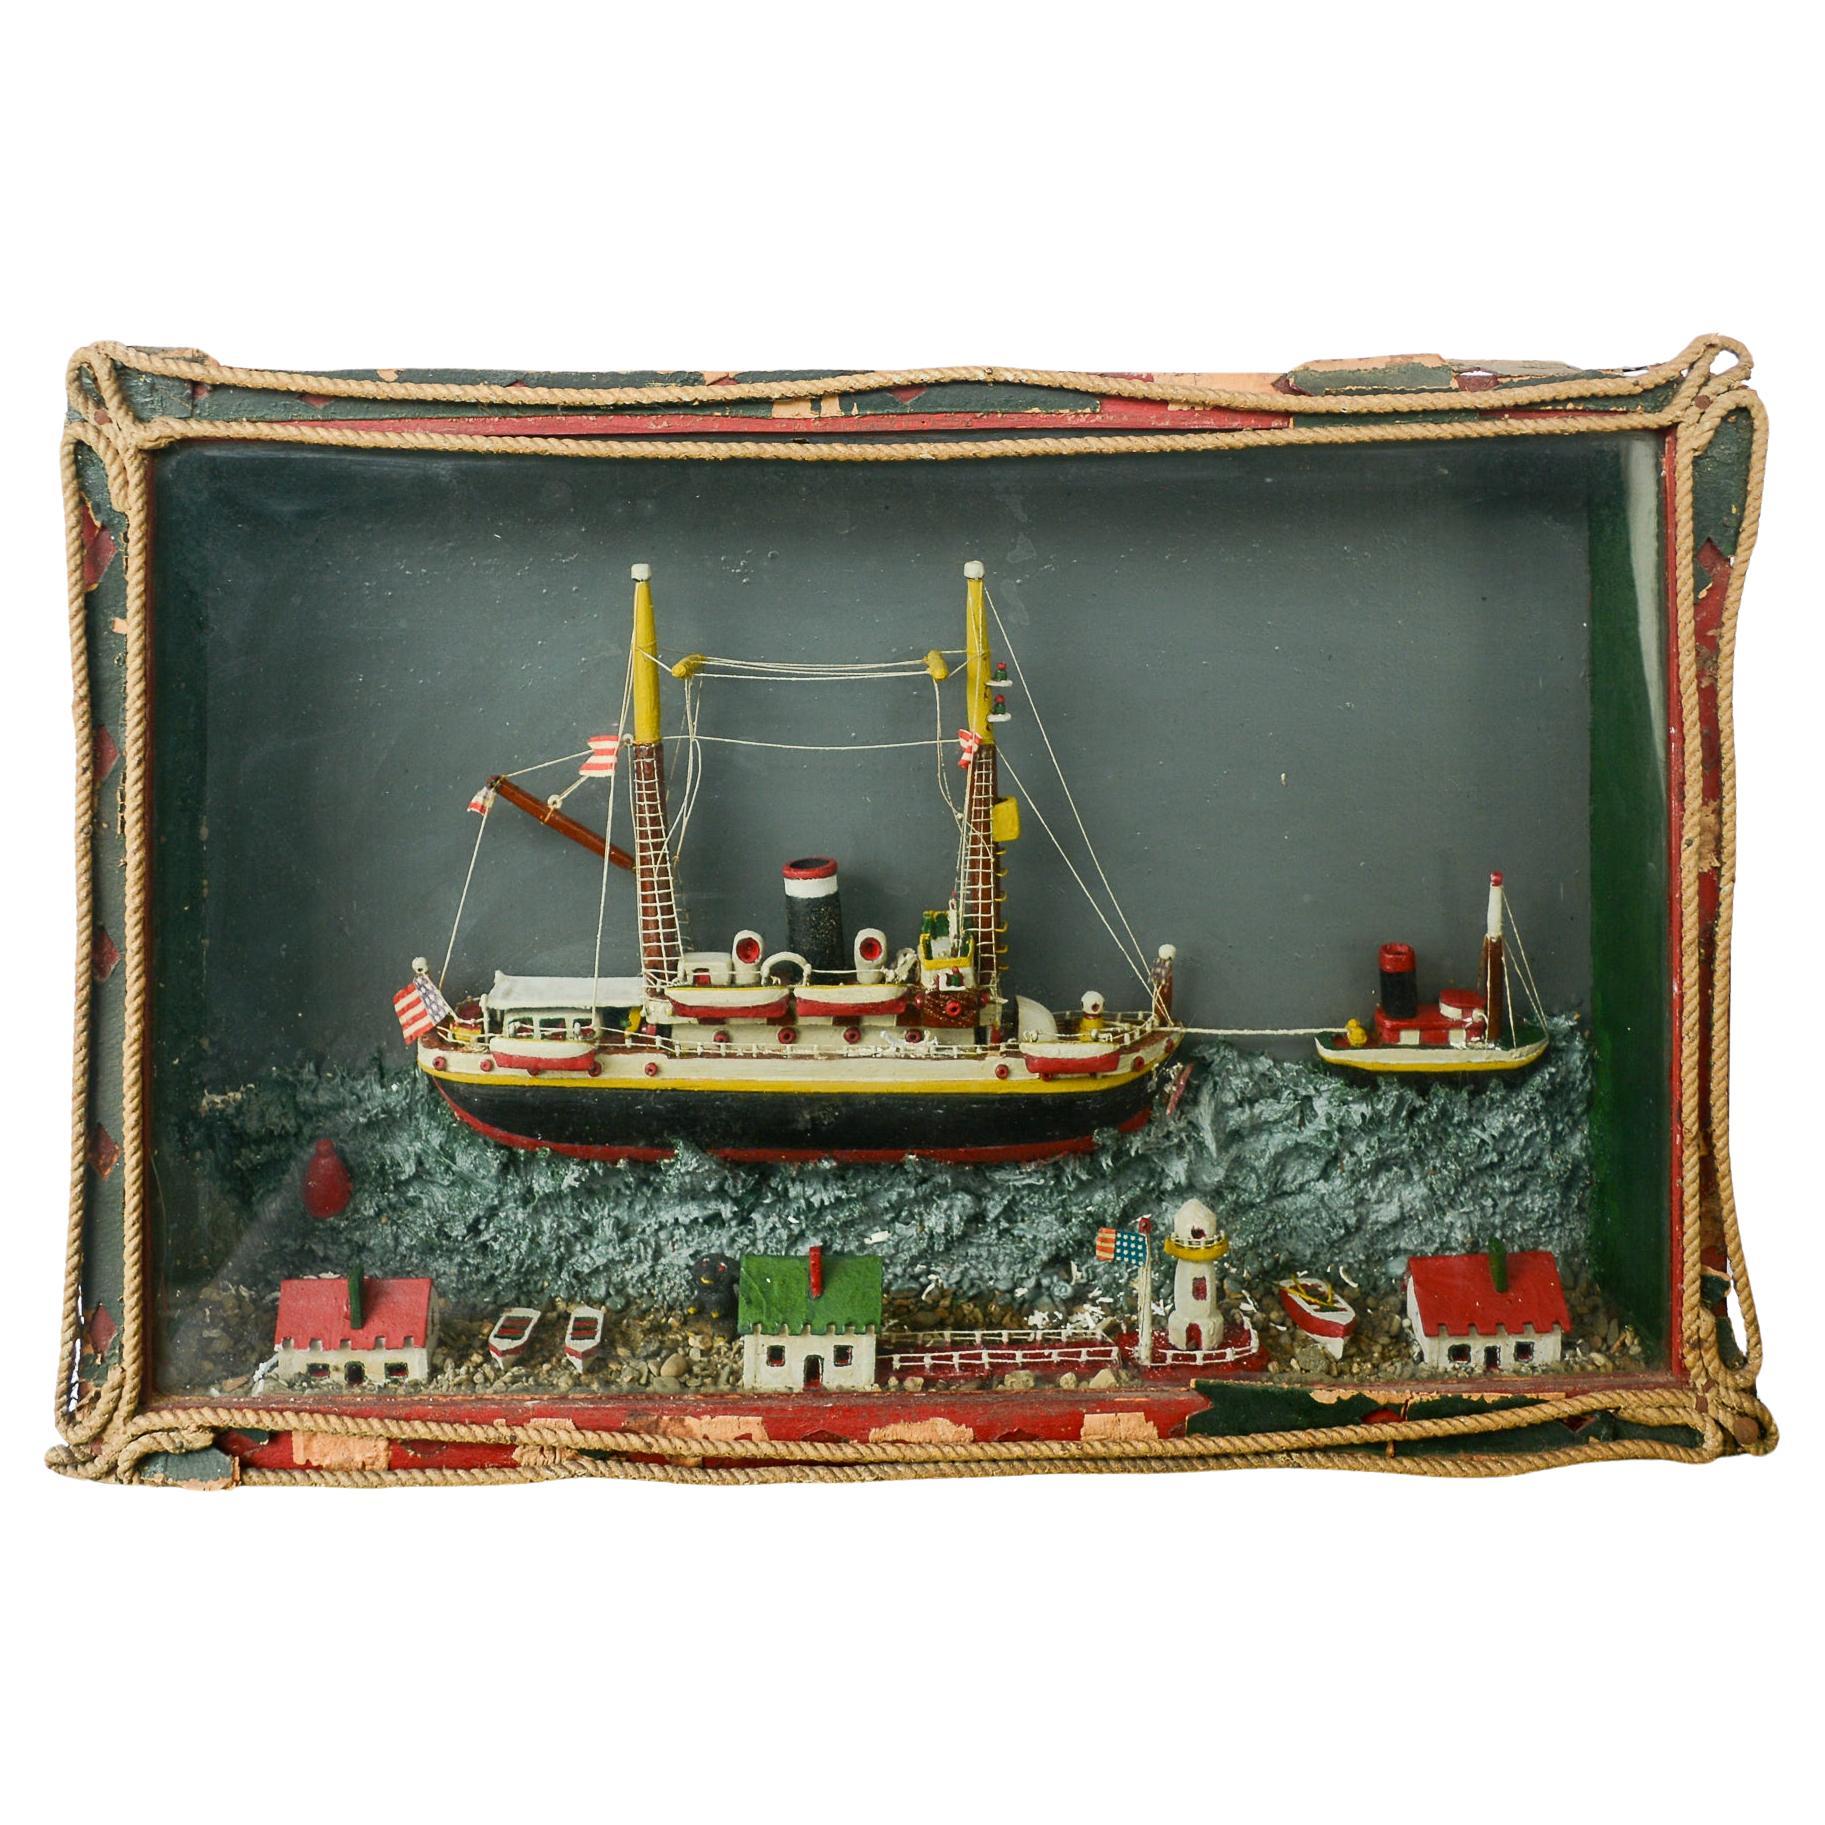 Early 20th Century Folk Art Ship Diorama